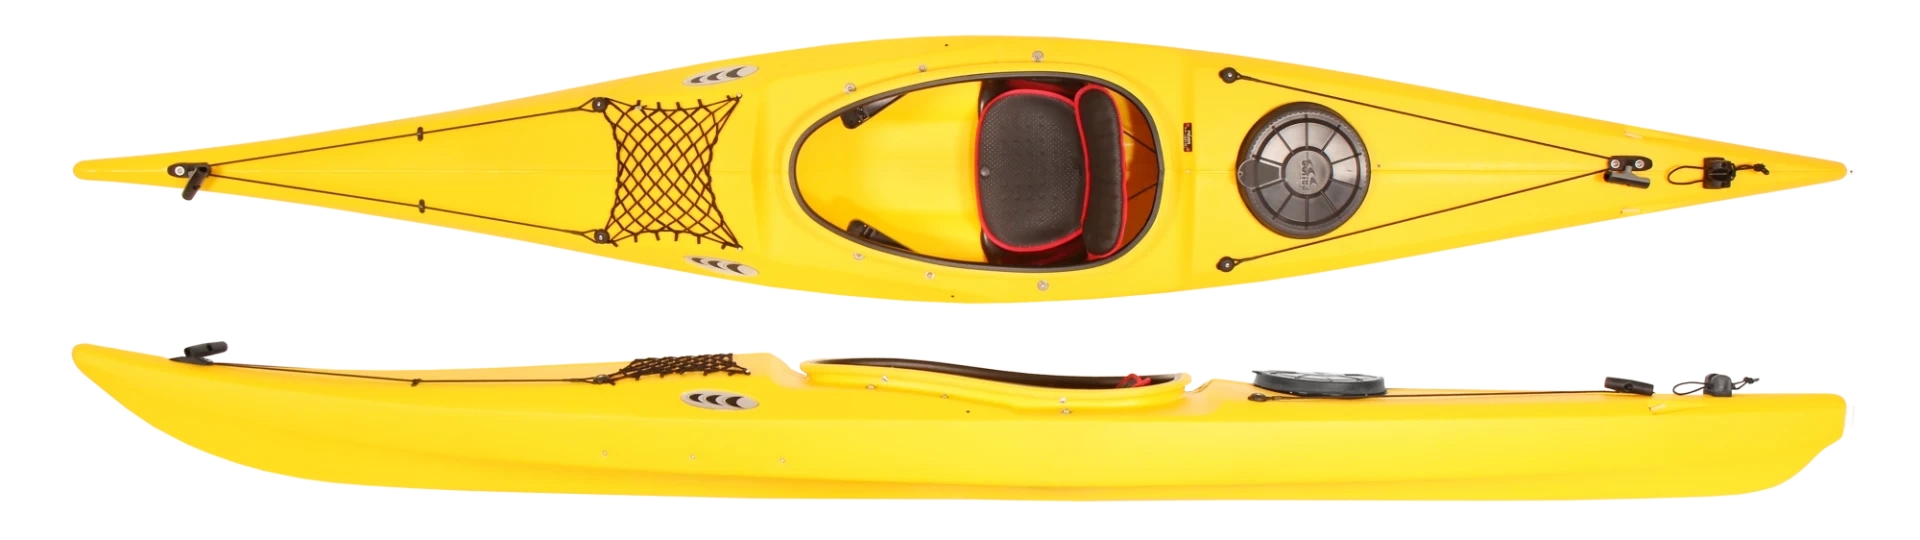 Prijon Seayak Jr kayak for children or small teenagers.